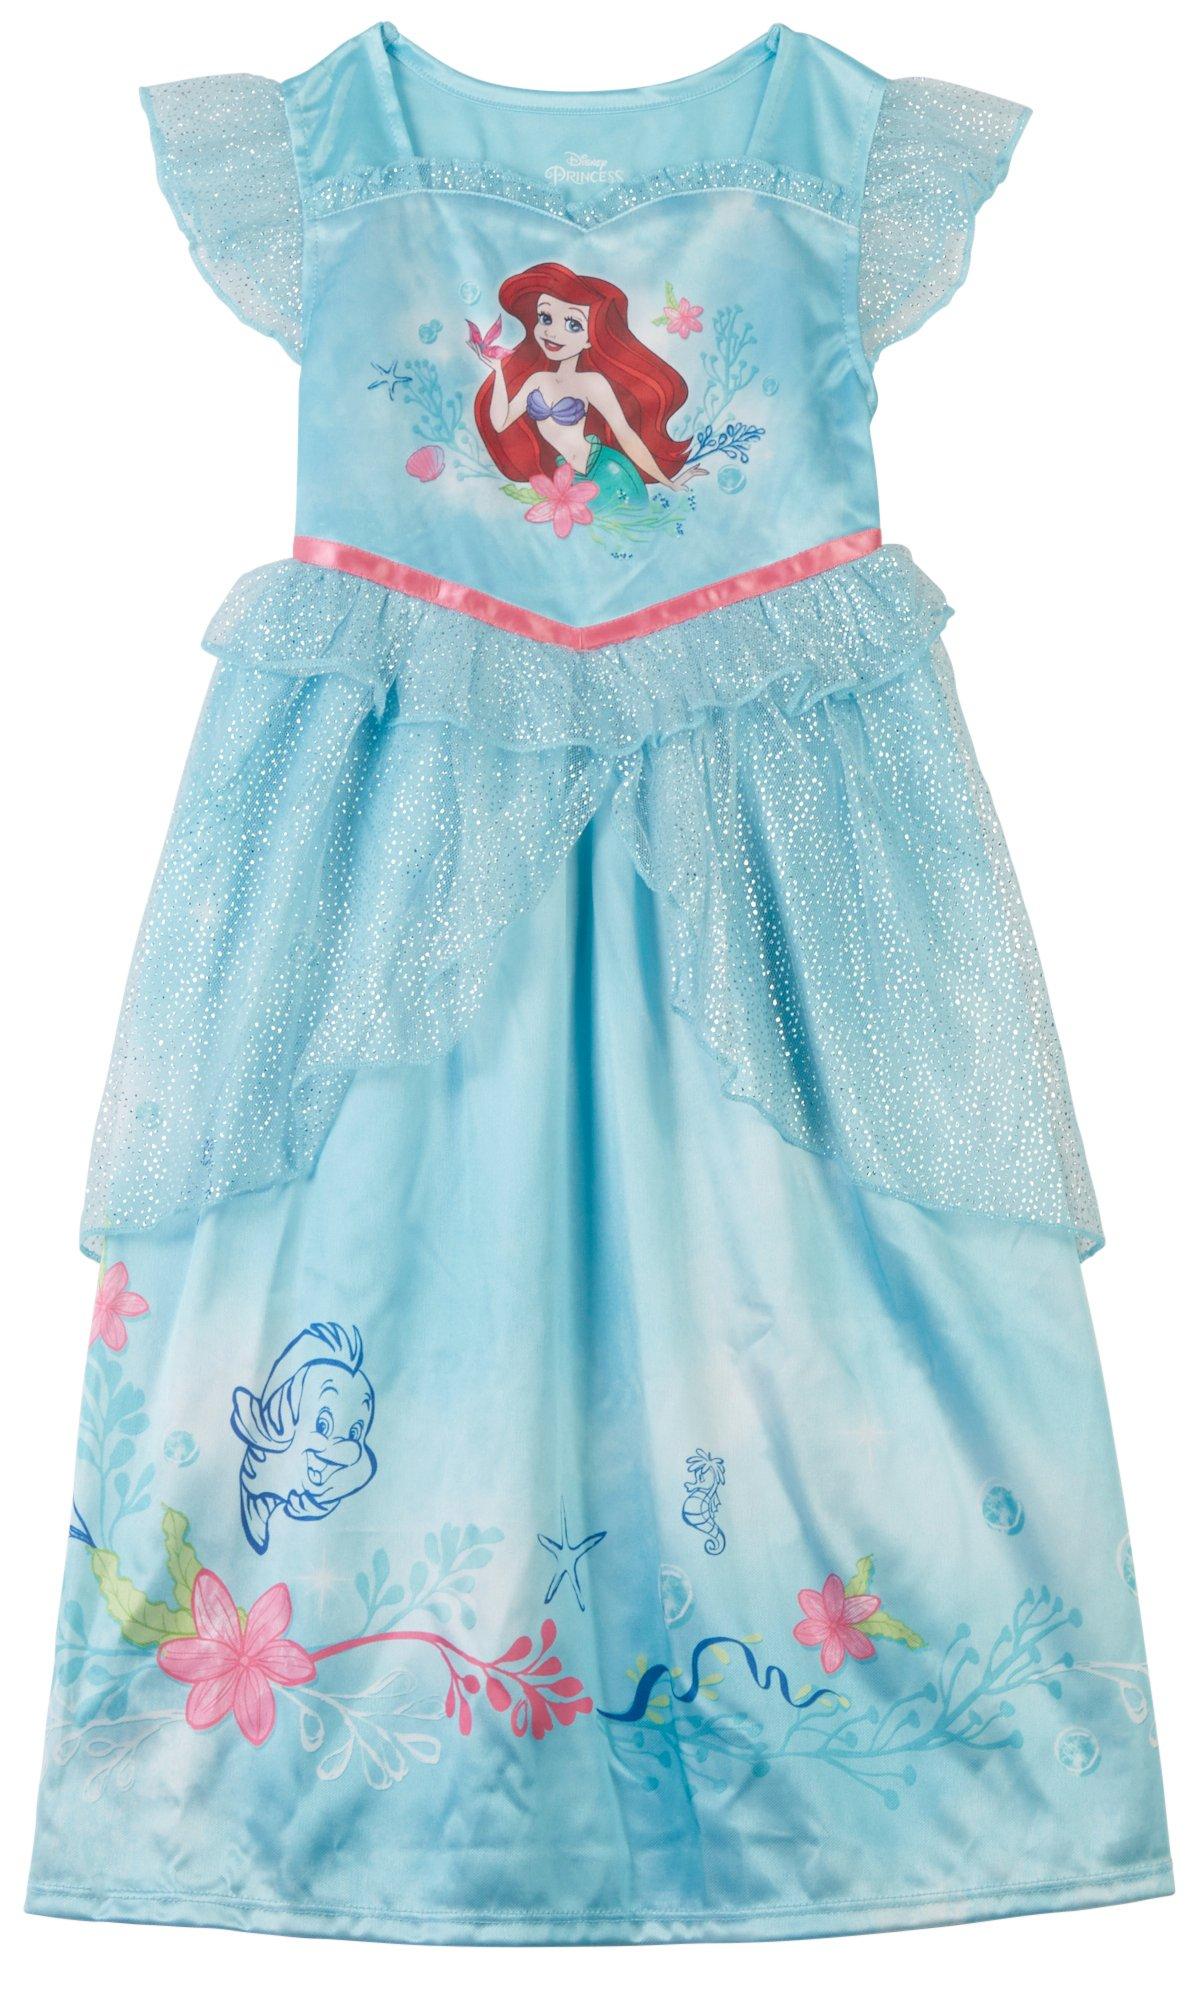 Toddler Girls Ariel Tutu Tulle Nightgown